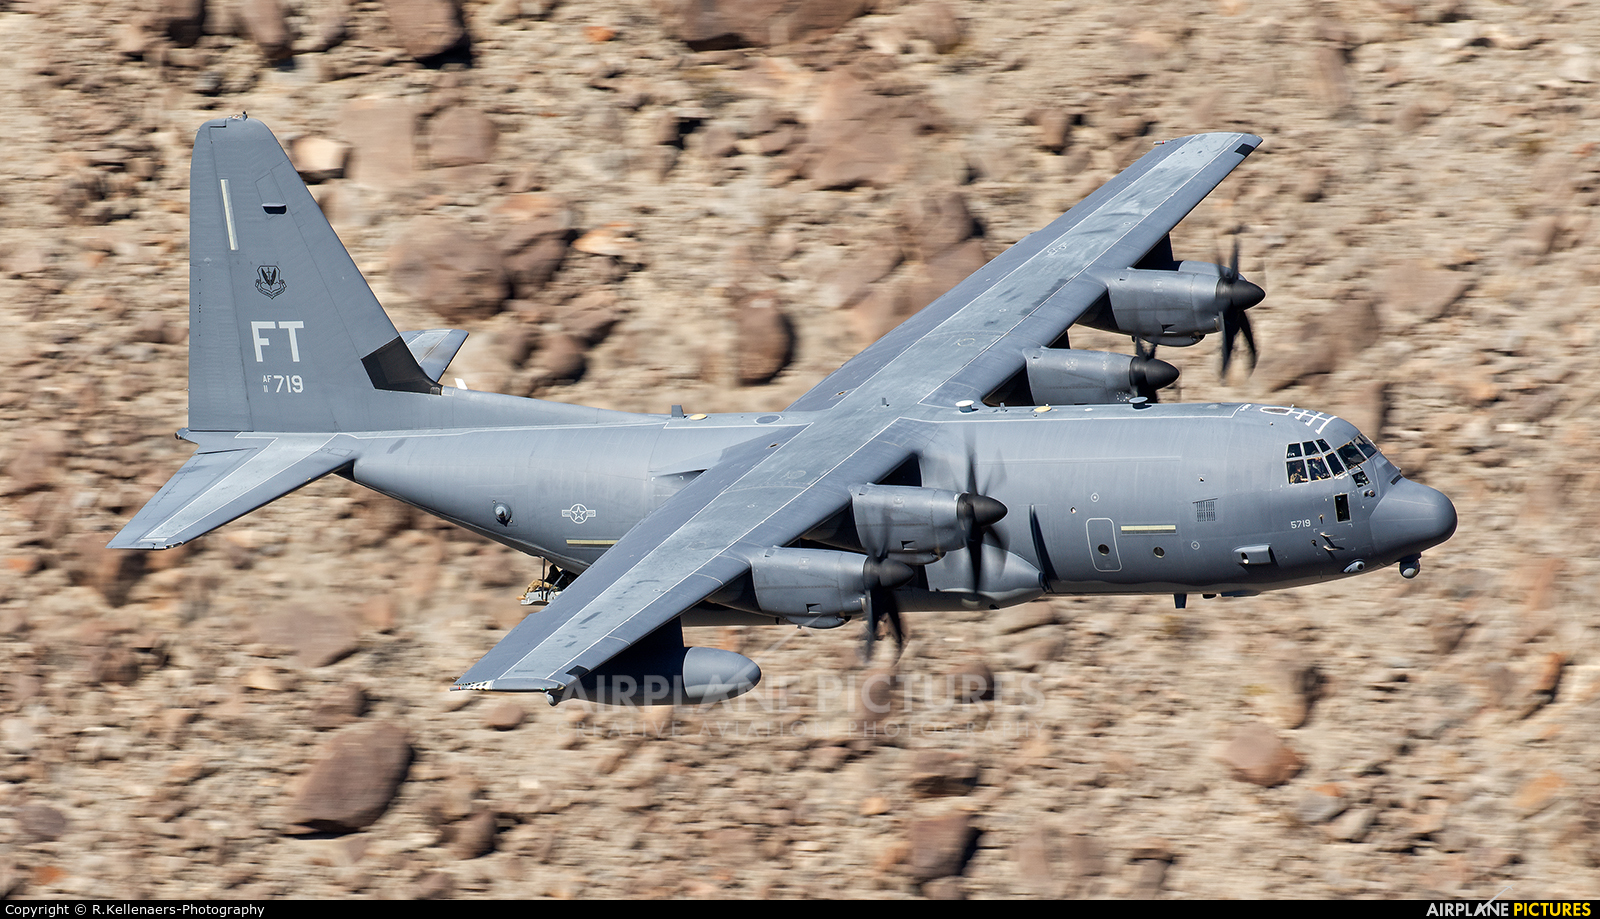 USA - Air Force 11-6719 aircraft at Rainbow Canyon - Off Airport